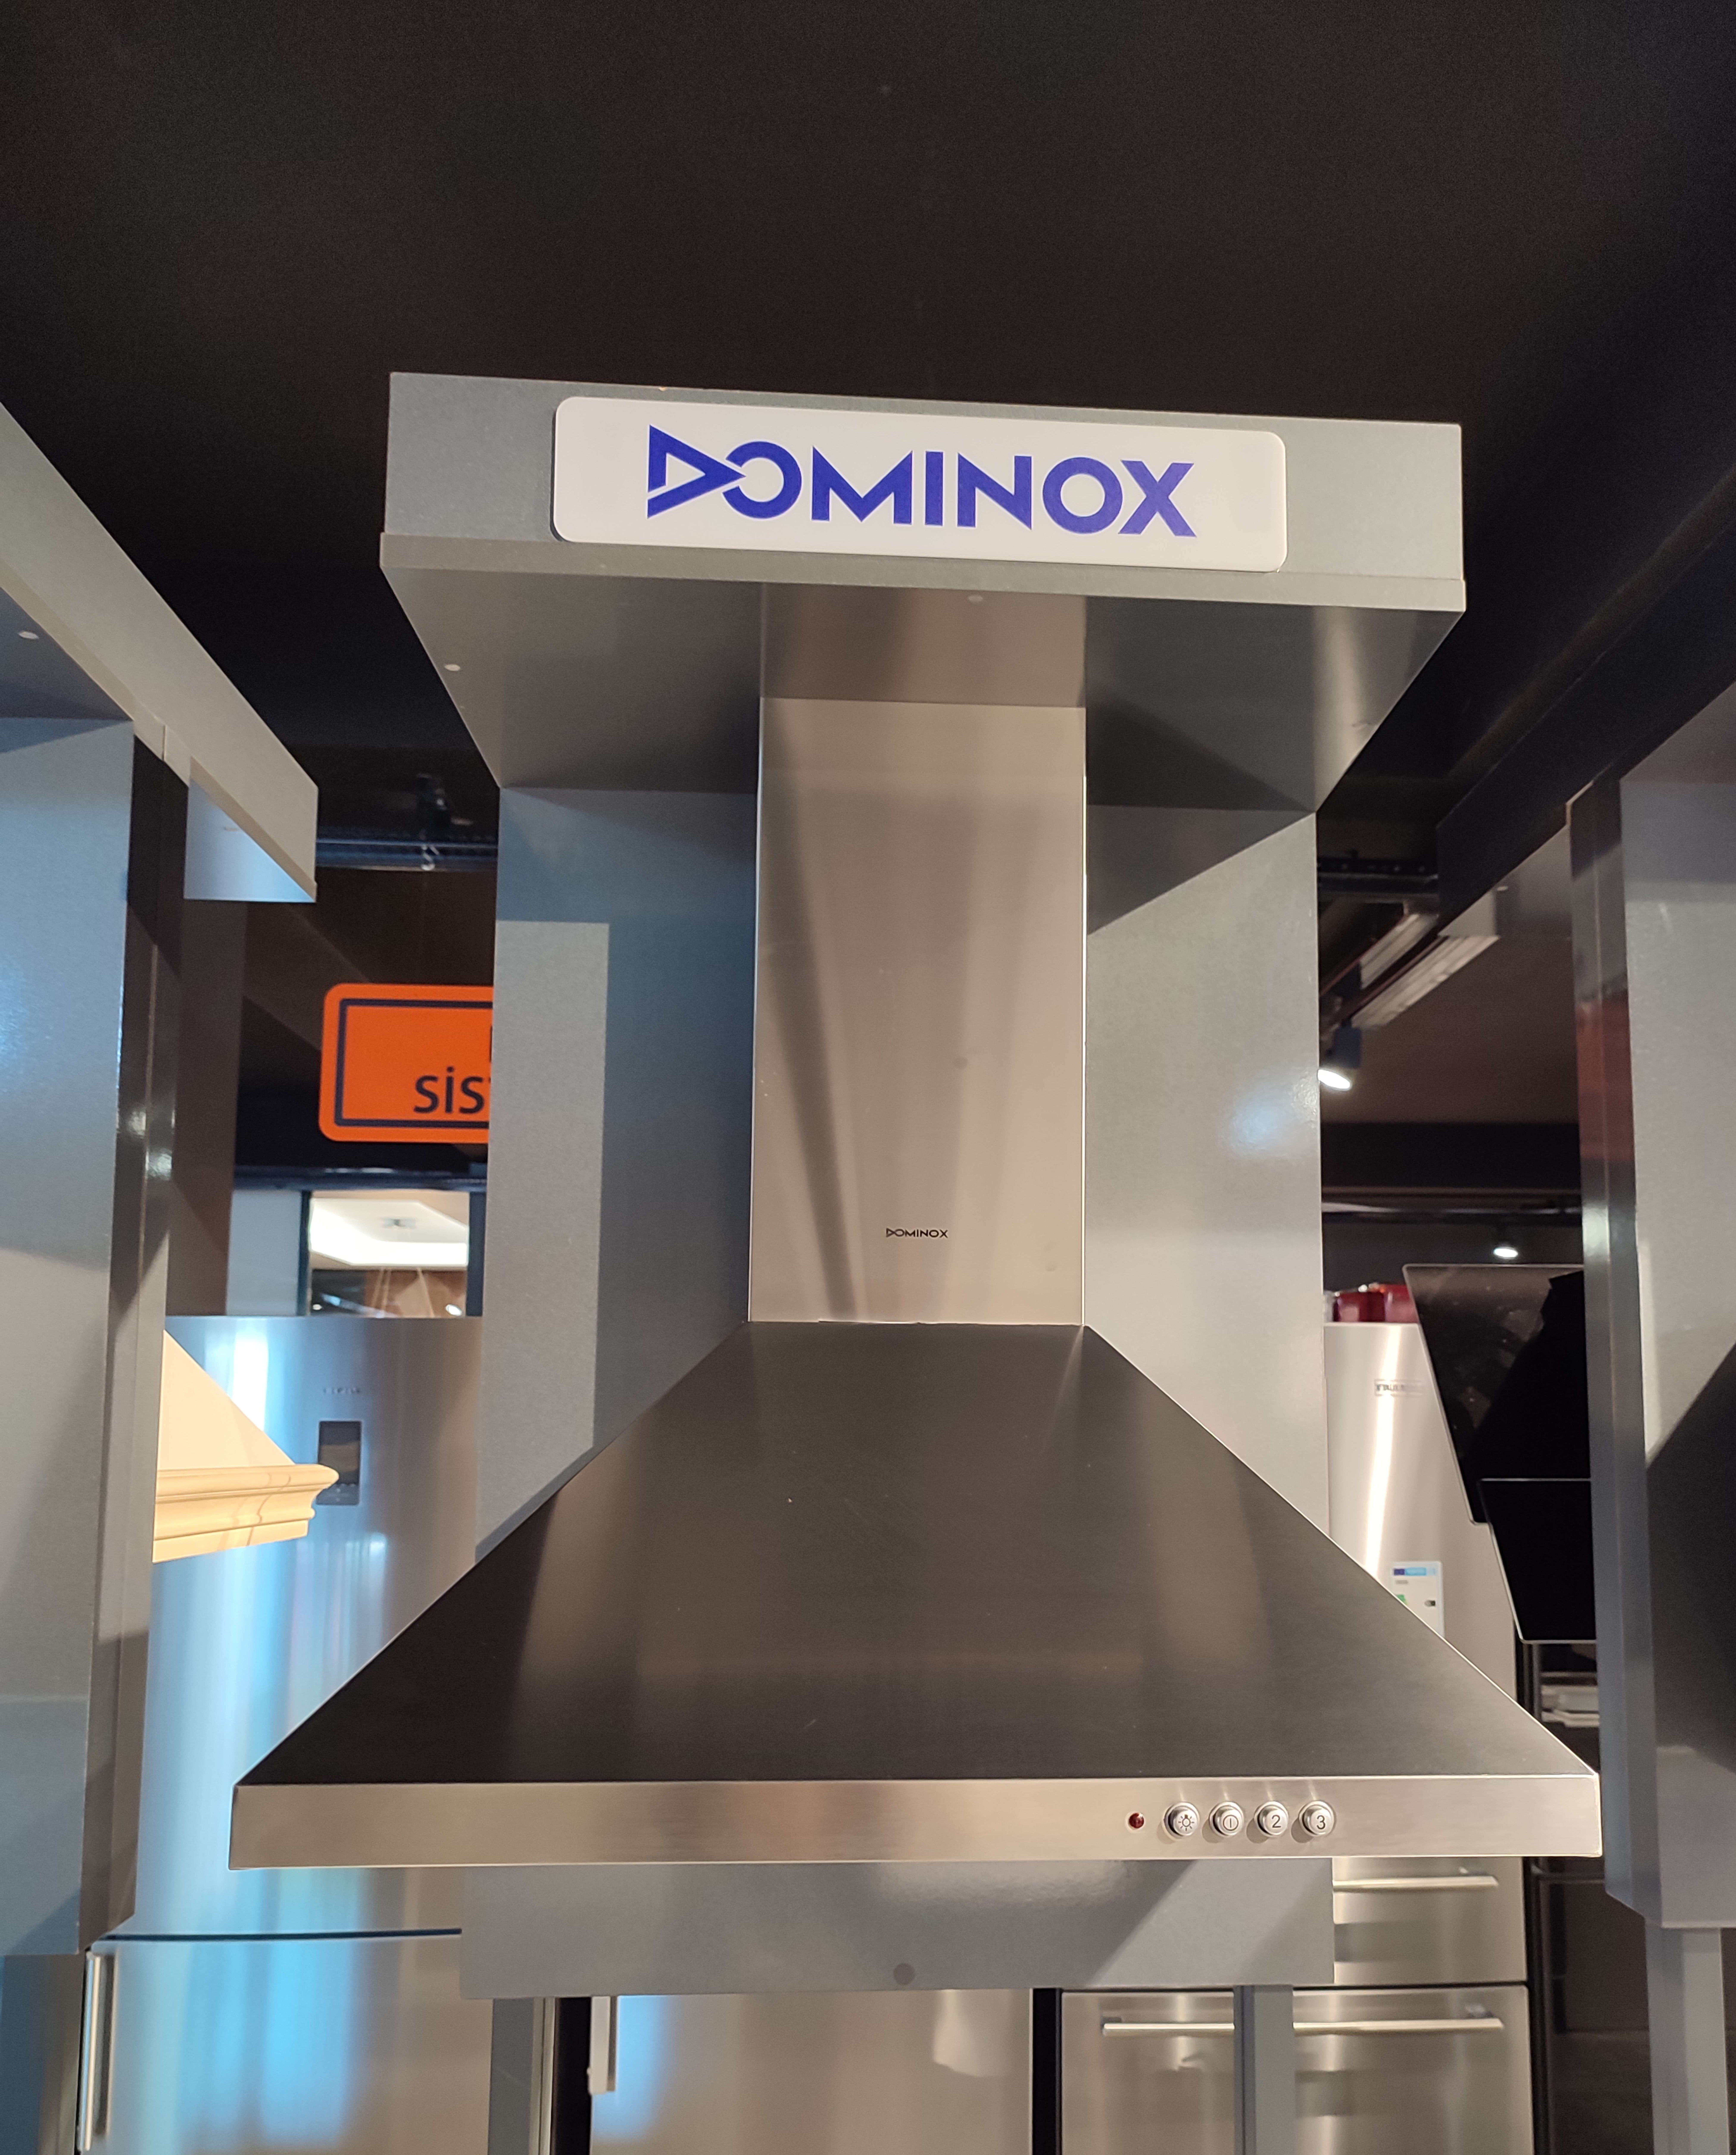 Dominox DA 621 D XS Inox Duvar Tipi Davlumbaz - Teşhir Ürün